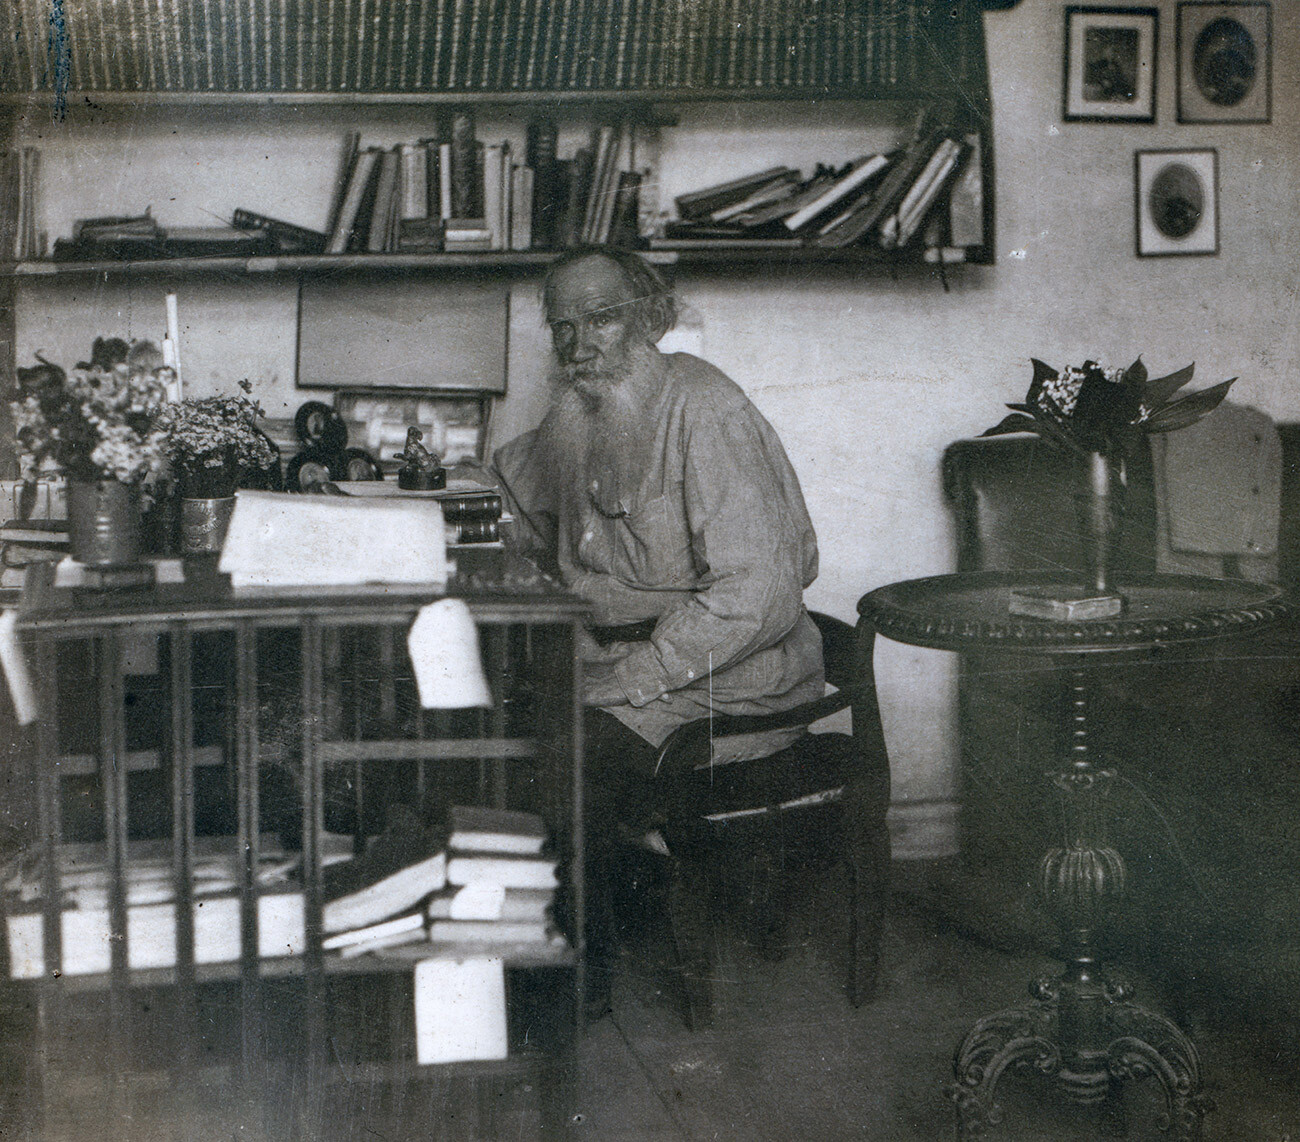 ヤースナヤ・ポリャーナ。書斎におけるレフ・トルストイ。オリジナルのガラス・ネガからのモノクロ・コンタクトプリント（ネガは保存されず）。セルゲイ・プロクディン＝ゴルスキー撮影。1908年5月23日。